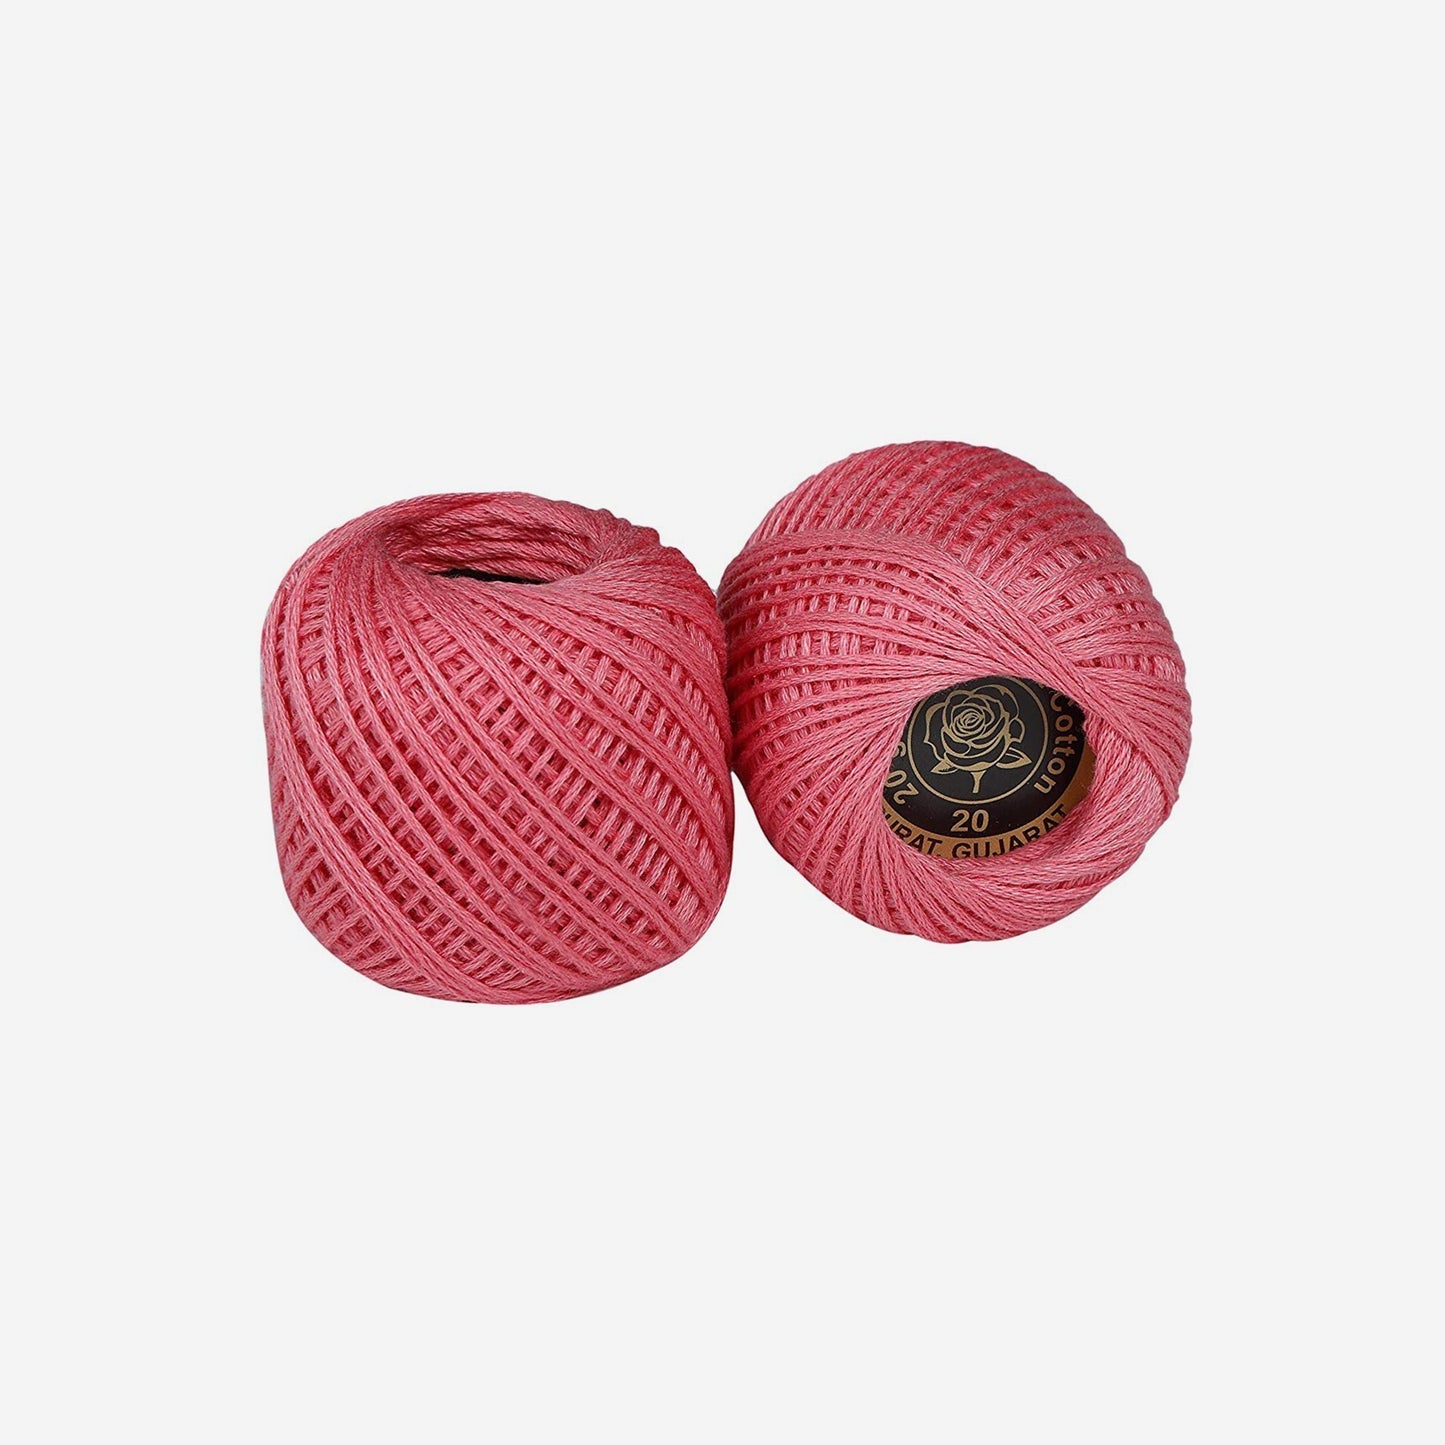 Hand-crochet hoops (Variation 11)